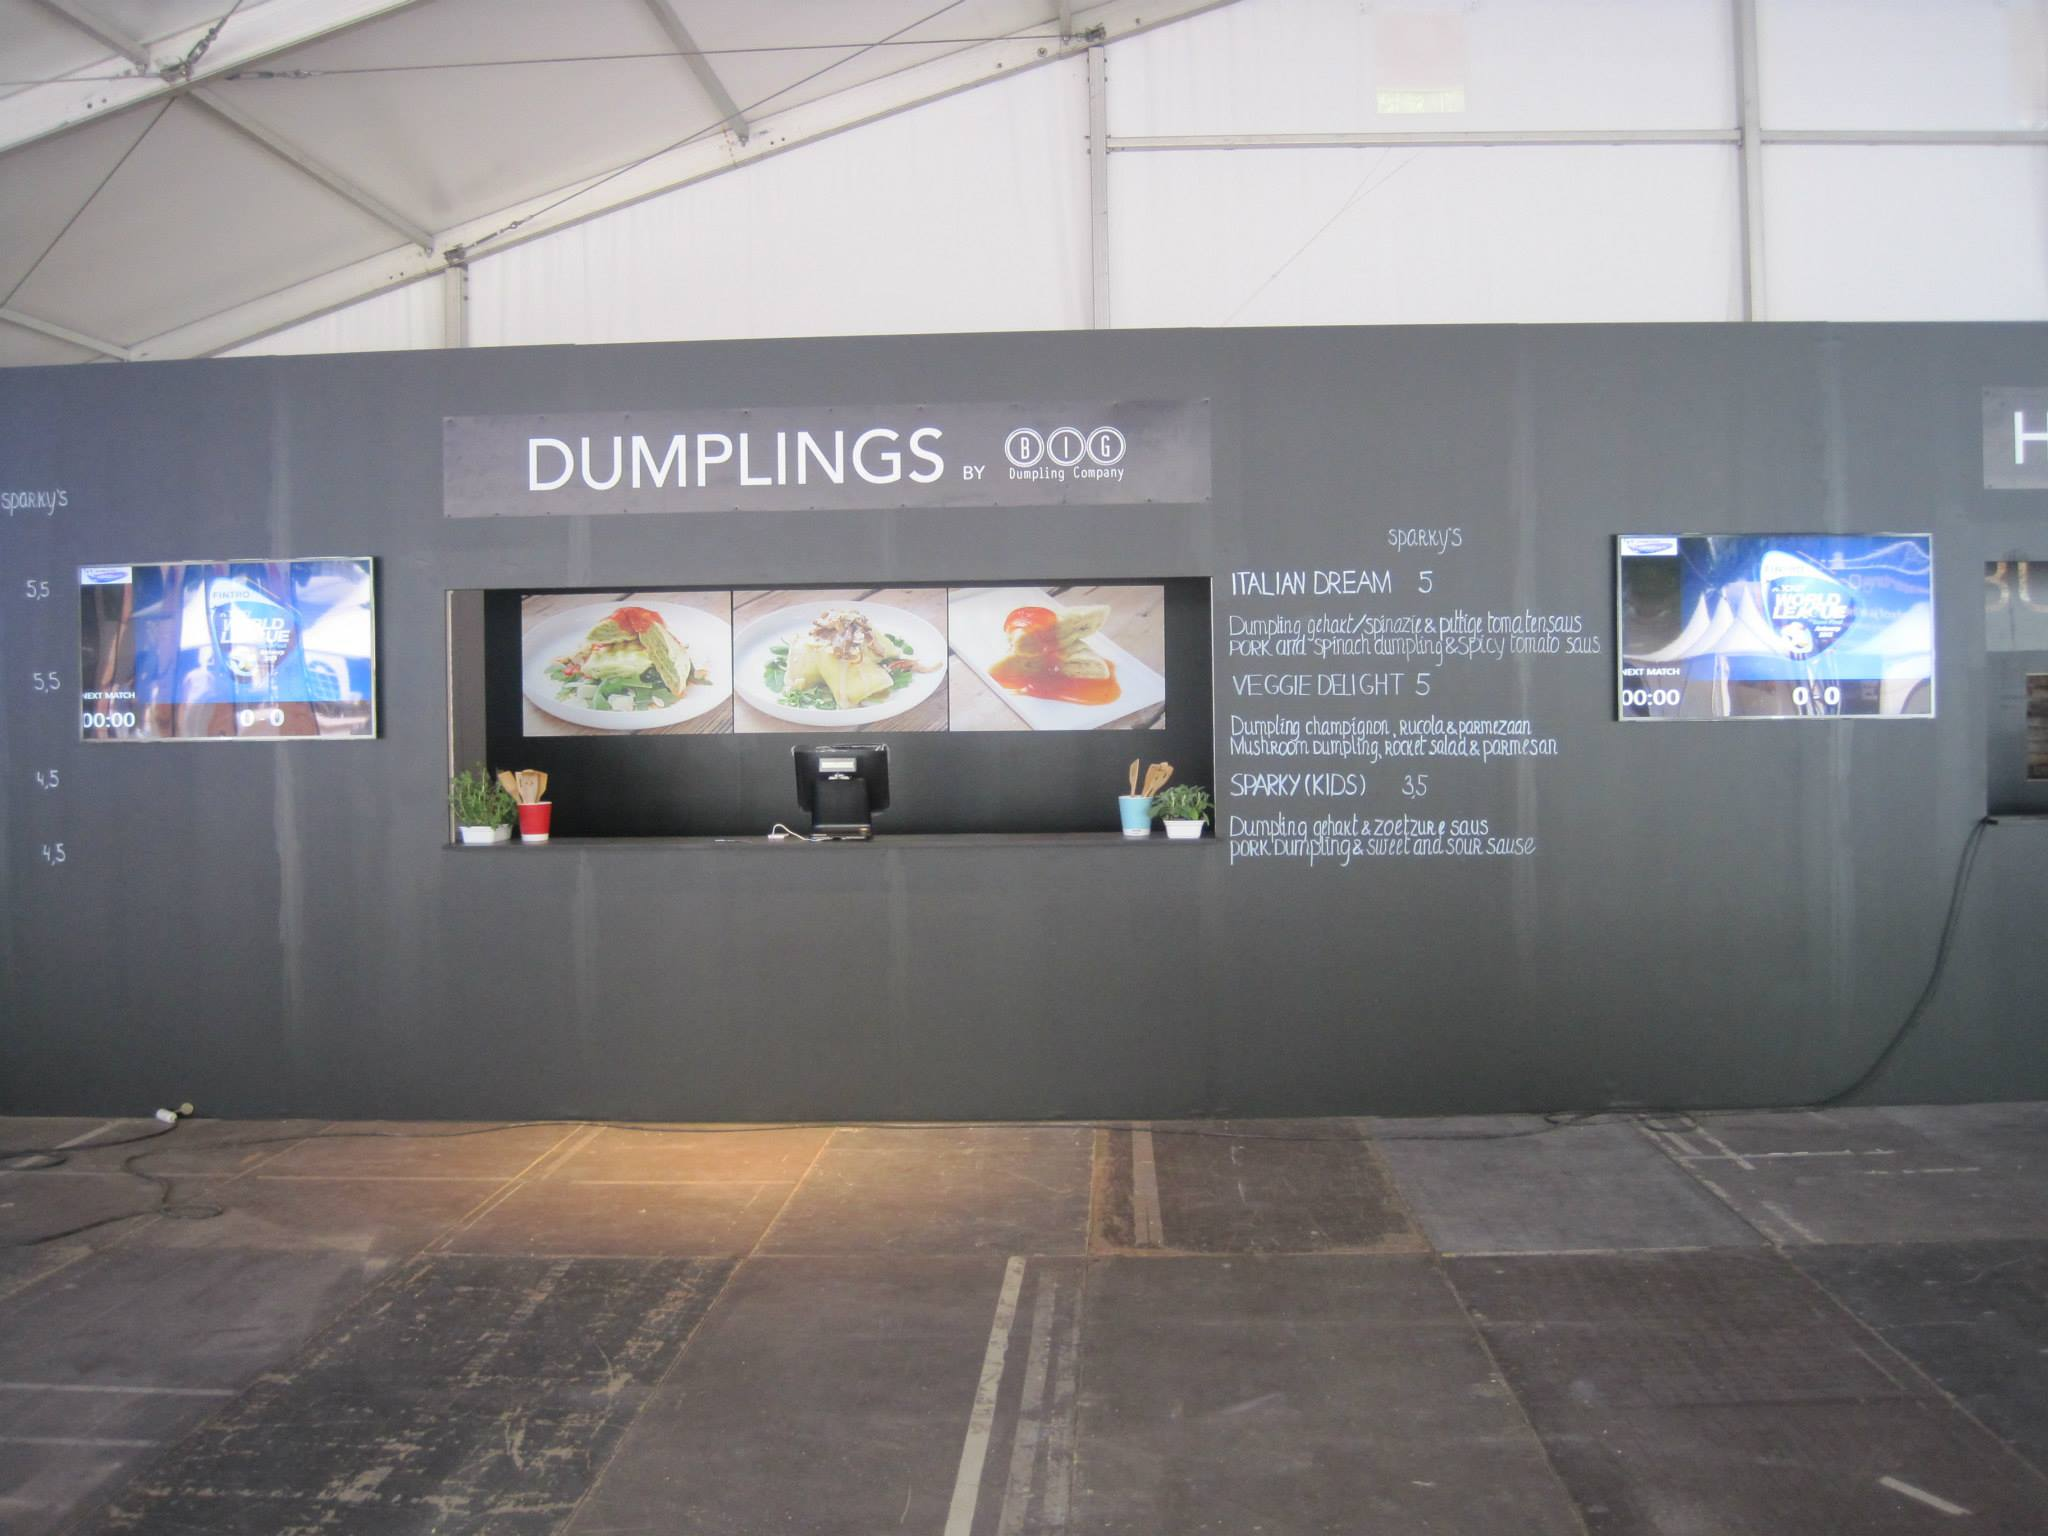 Big Dumplings Company